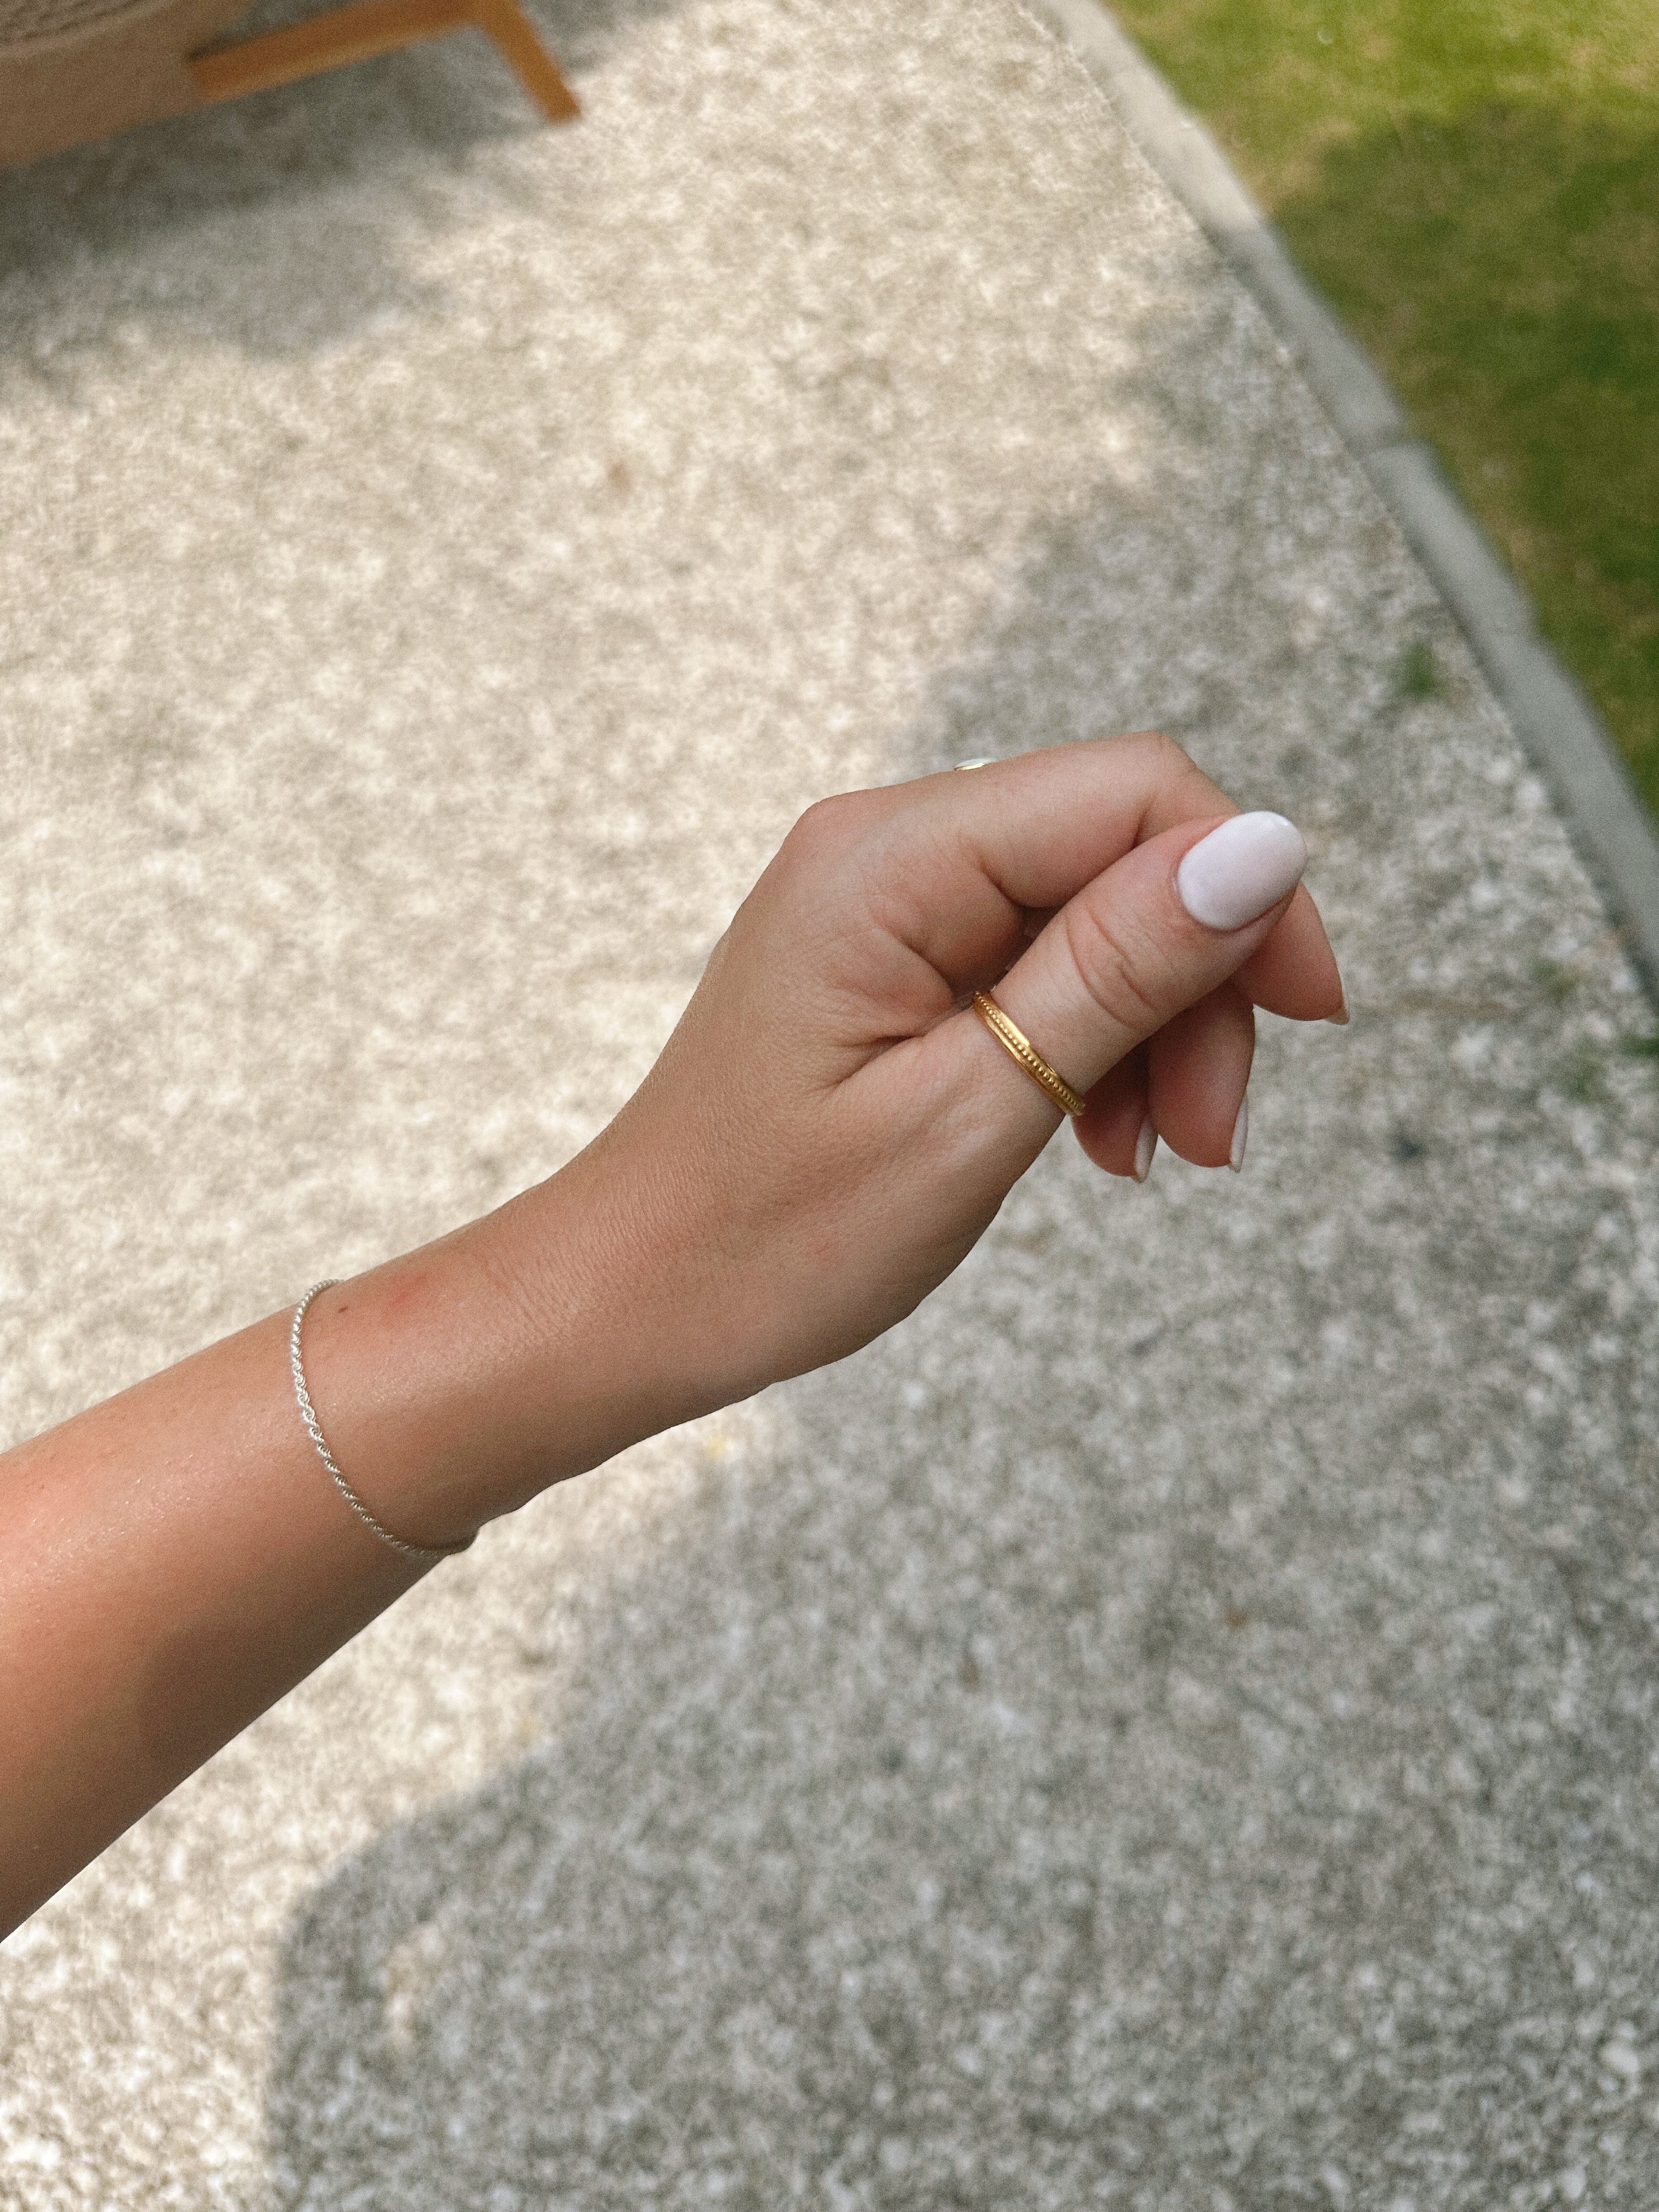 Bali Schmuck| VERLAN Jewellery | Fairfashion | Handgemachte Ringe im Boho Look aus Bali | Single Fin Ring mit Perlen | Wunderschön und mit viel Liebe angefertigt